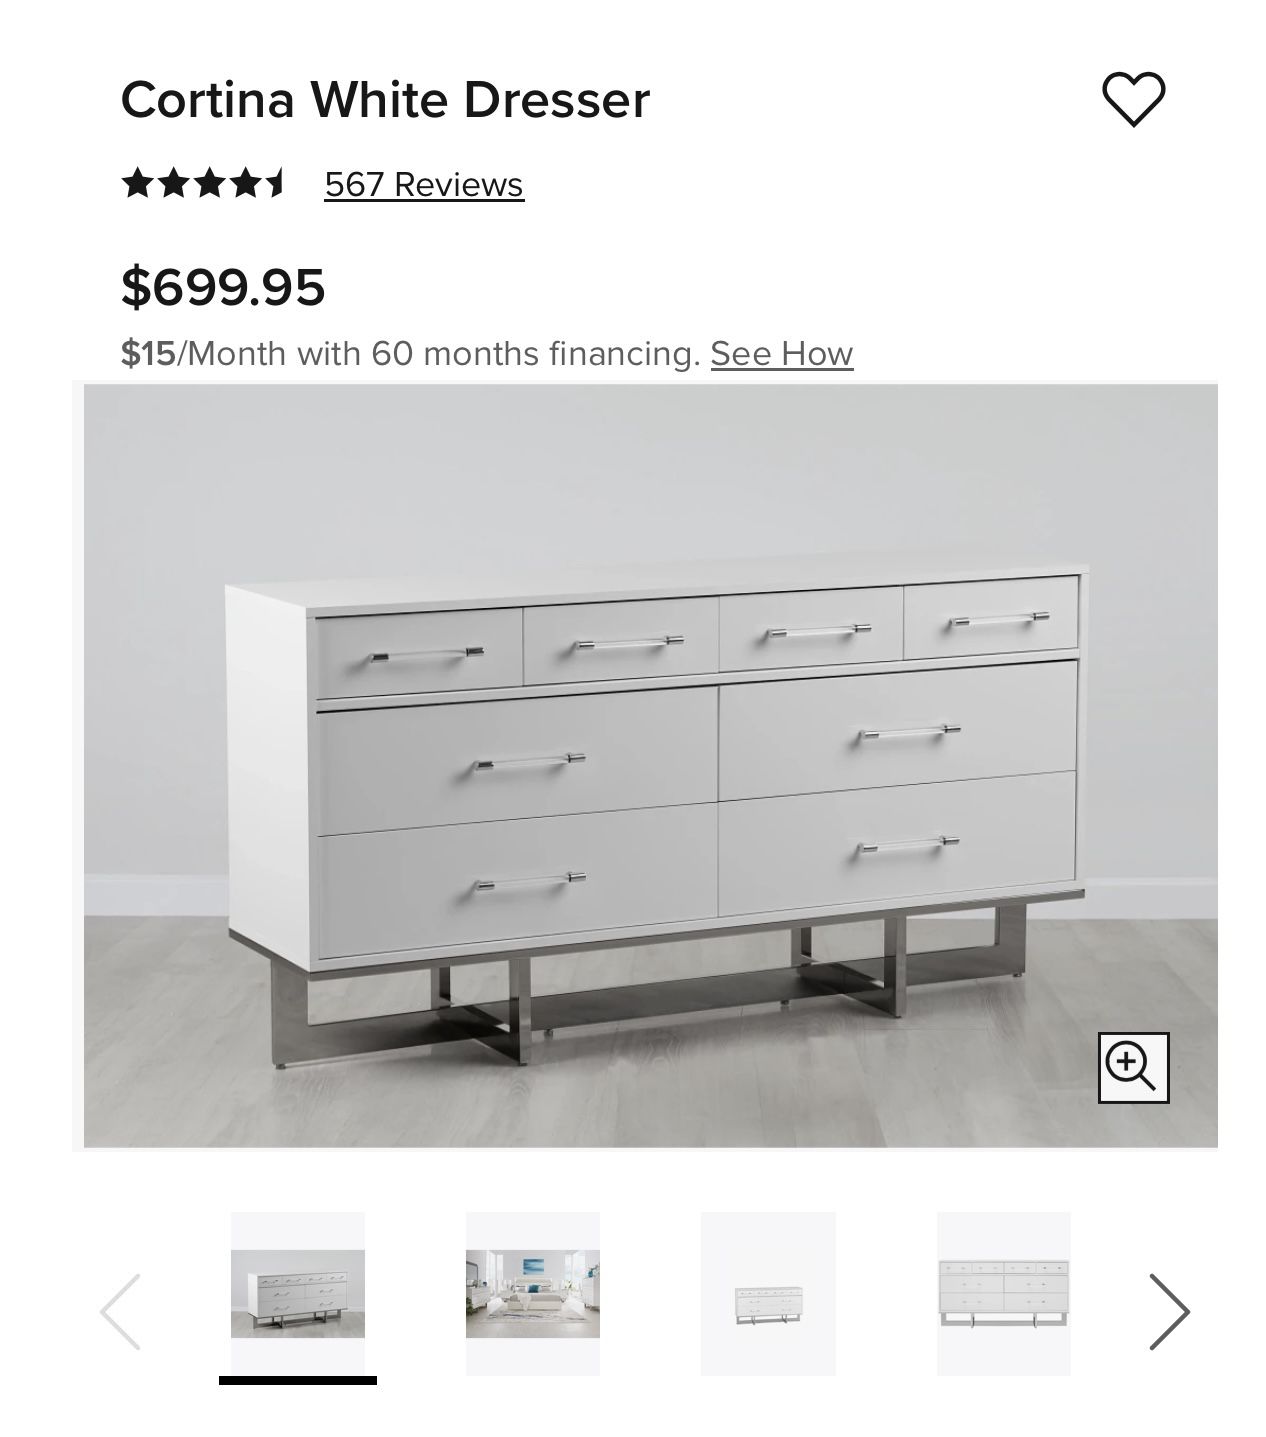 Cortina White Dresser 